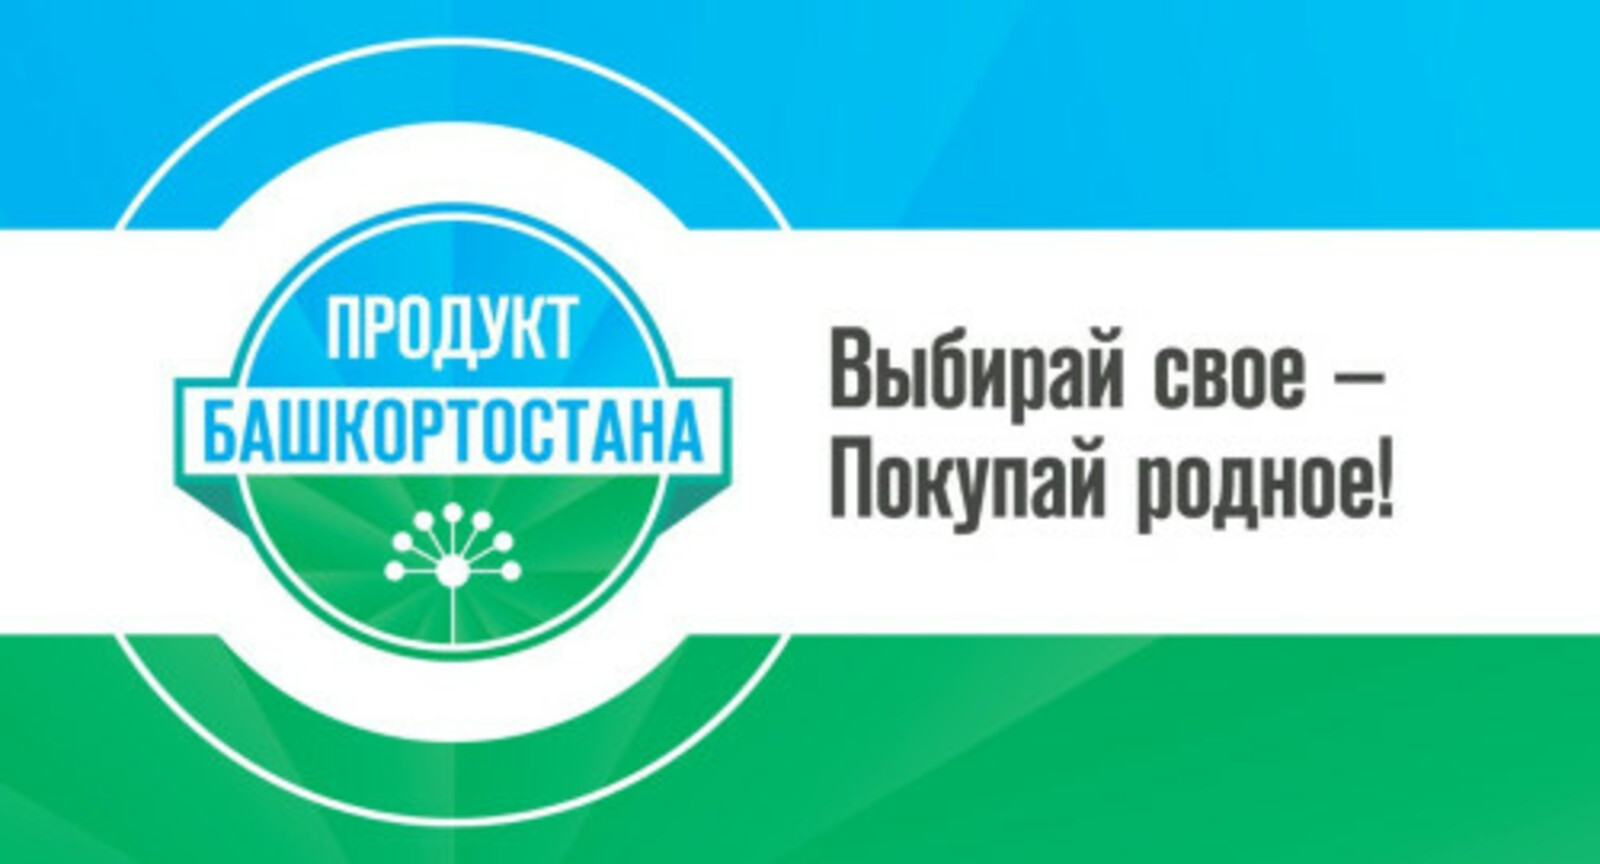 Количество товаров с маркировкой «Продукт Башкортостана» выросло в 2 раза